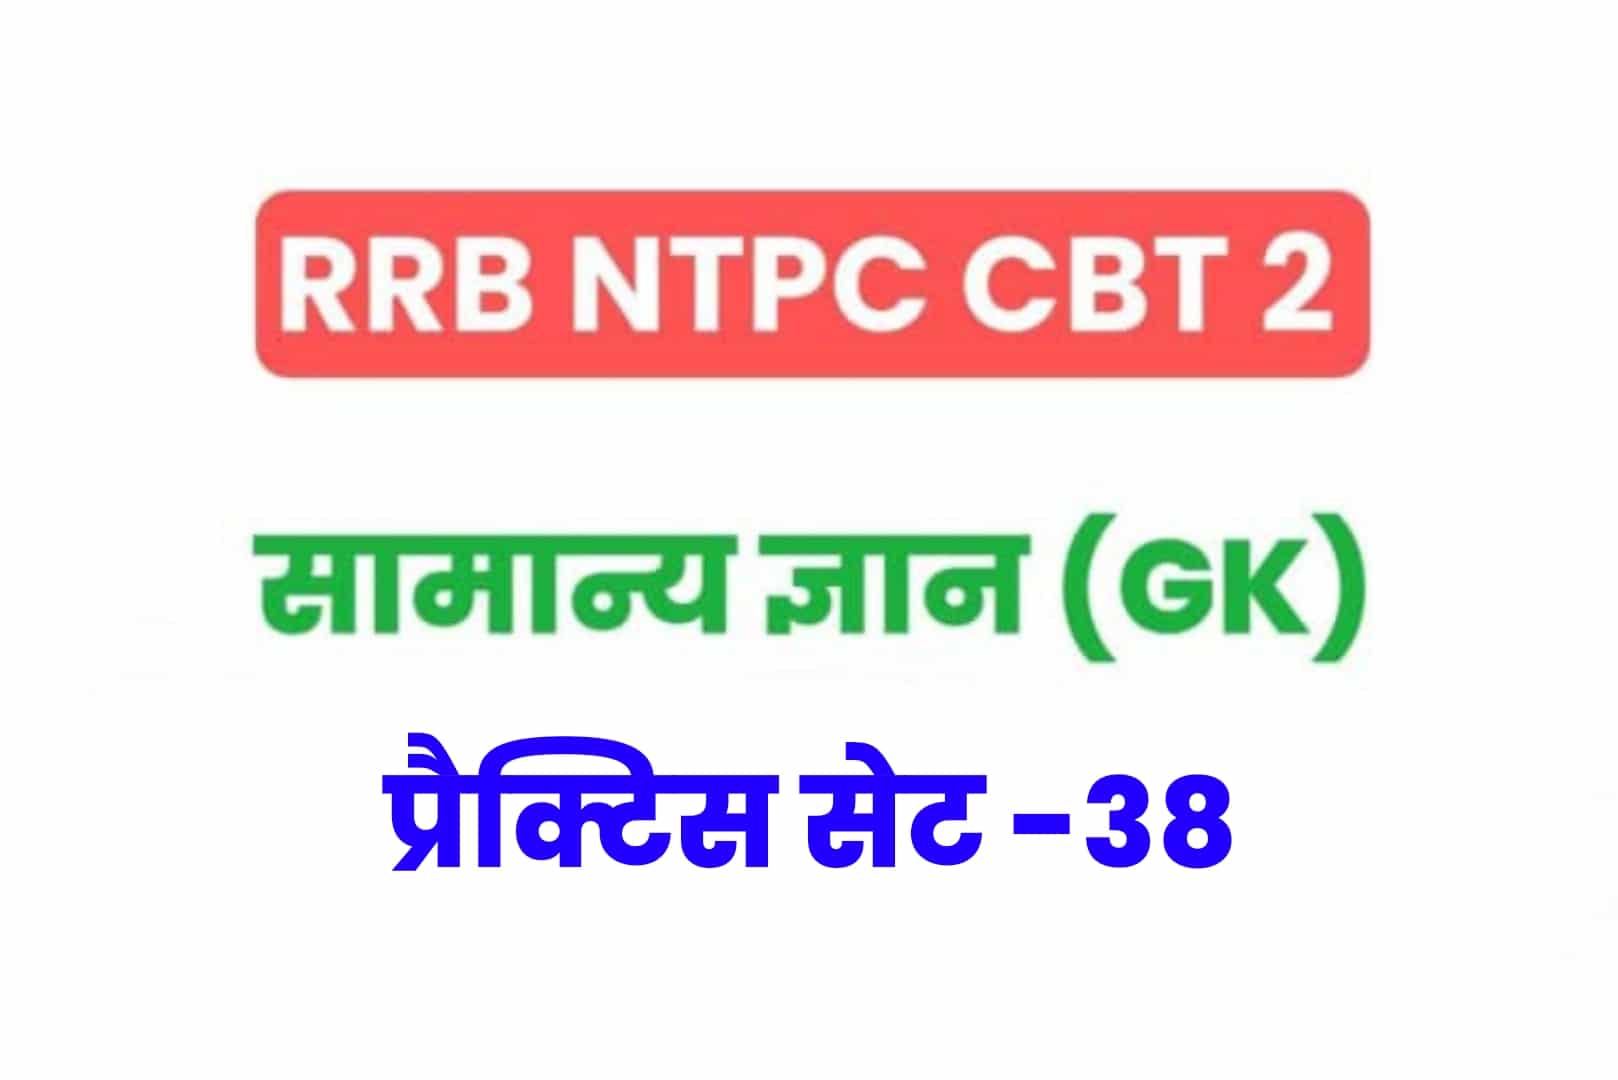 RRB NTPC CBT 2 GK प्रैक्टिस सेट 38: परीक्षा में बेहतर परिणाम के लिए जरूर पढ़ें सामान्य ज्ञान के 25 मुख्य MCQ